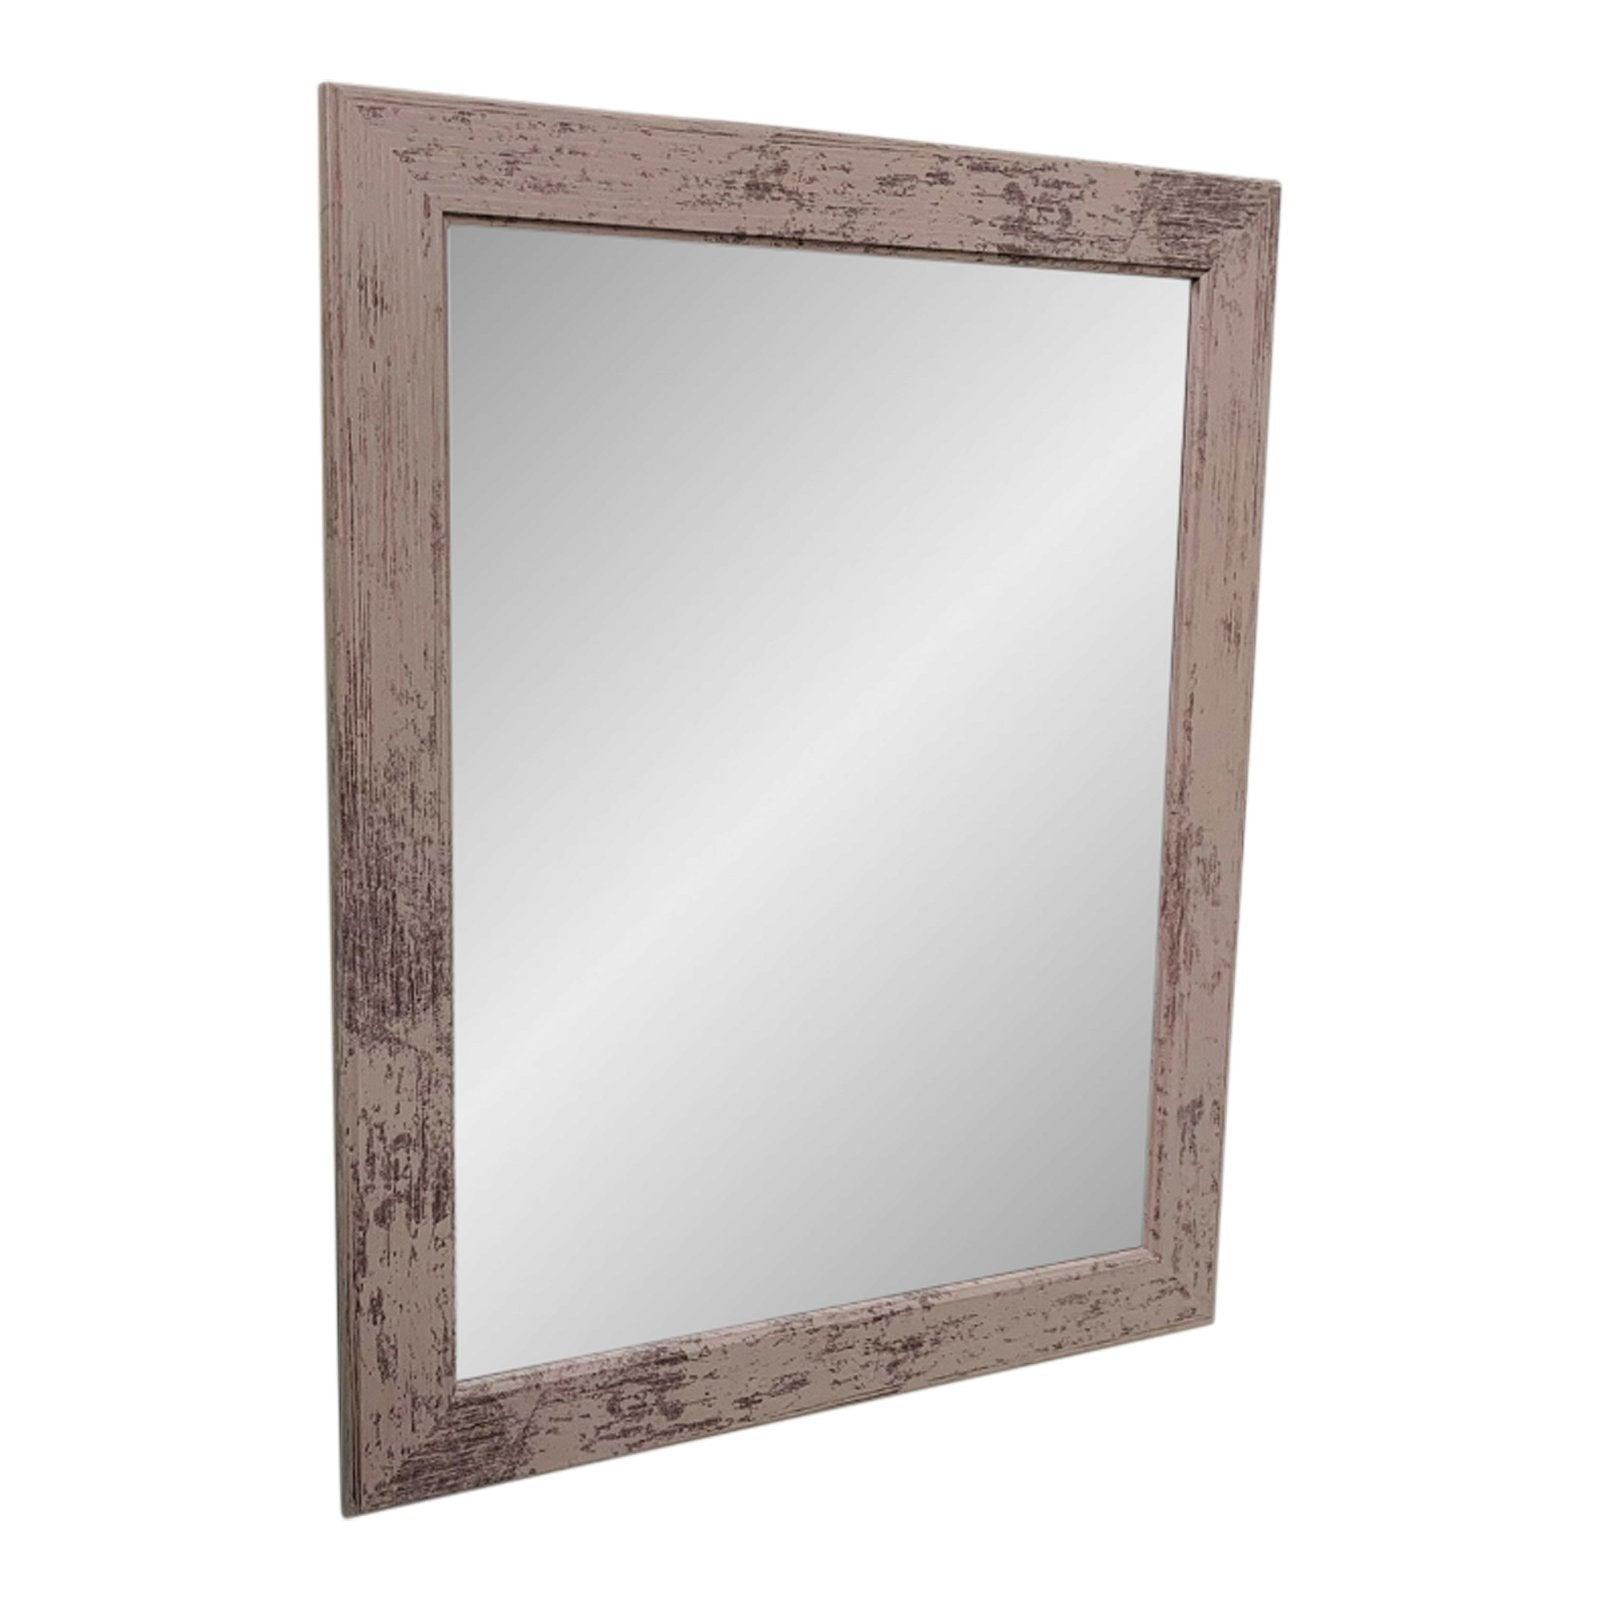 Grey Wooden Mirror 60x50cm - £38.99 - Mirrors 